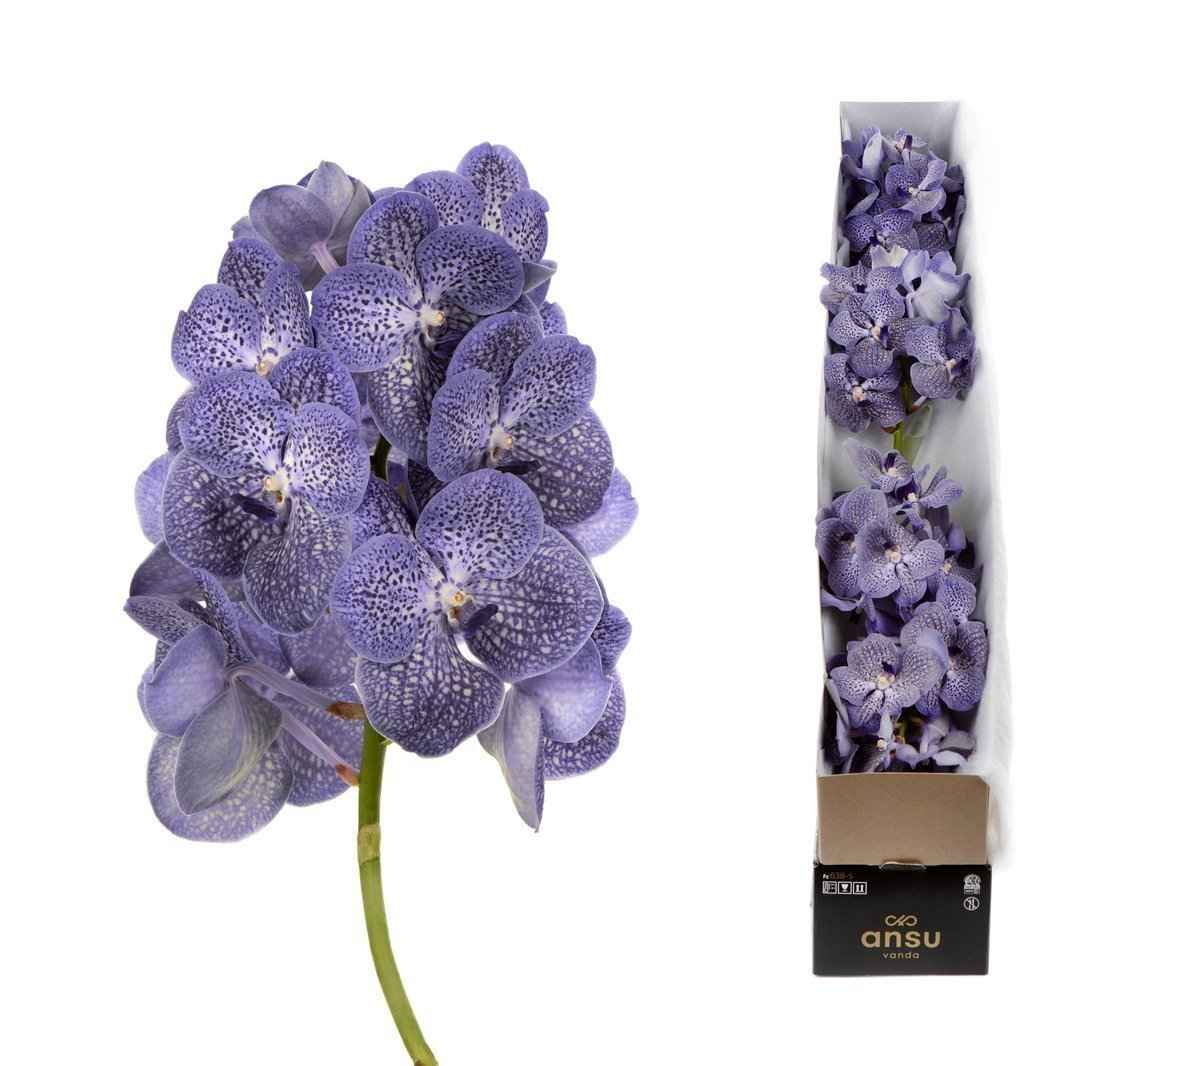 Срезанные цветы оптом Vanda violet blue spot per stem от 4шт из Голландии с доставкой по России